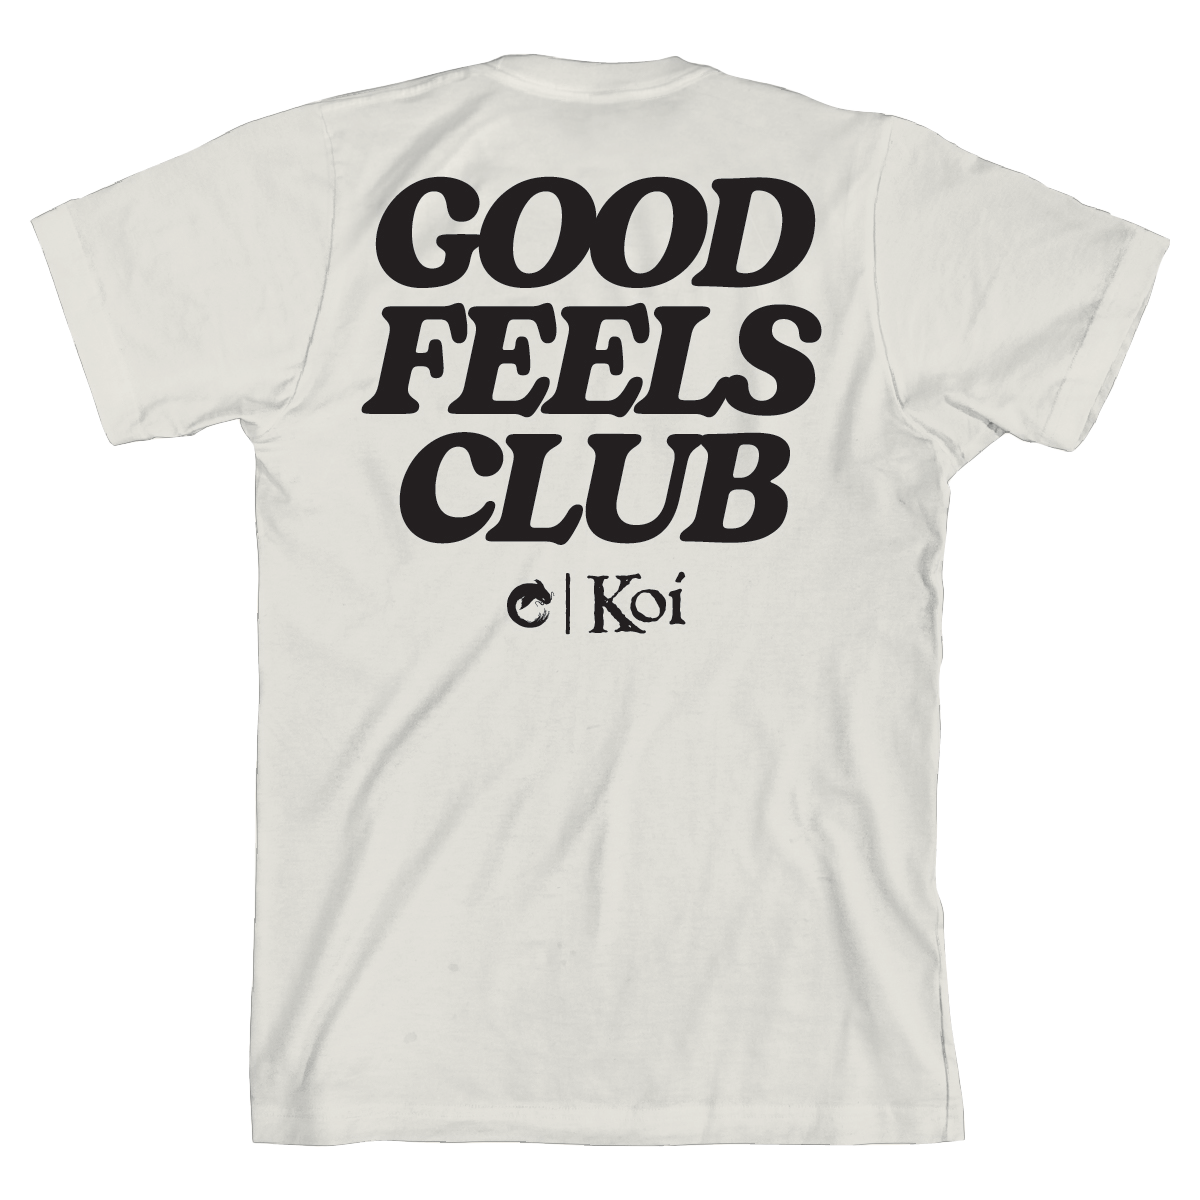 Good Feels Club Tee